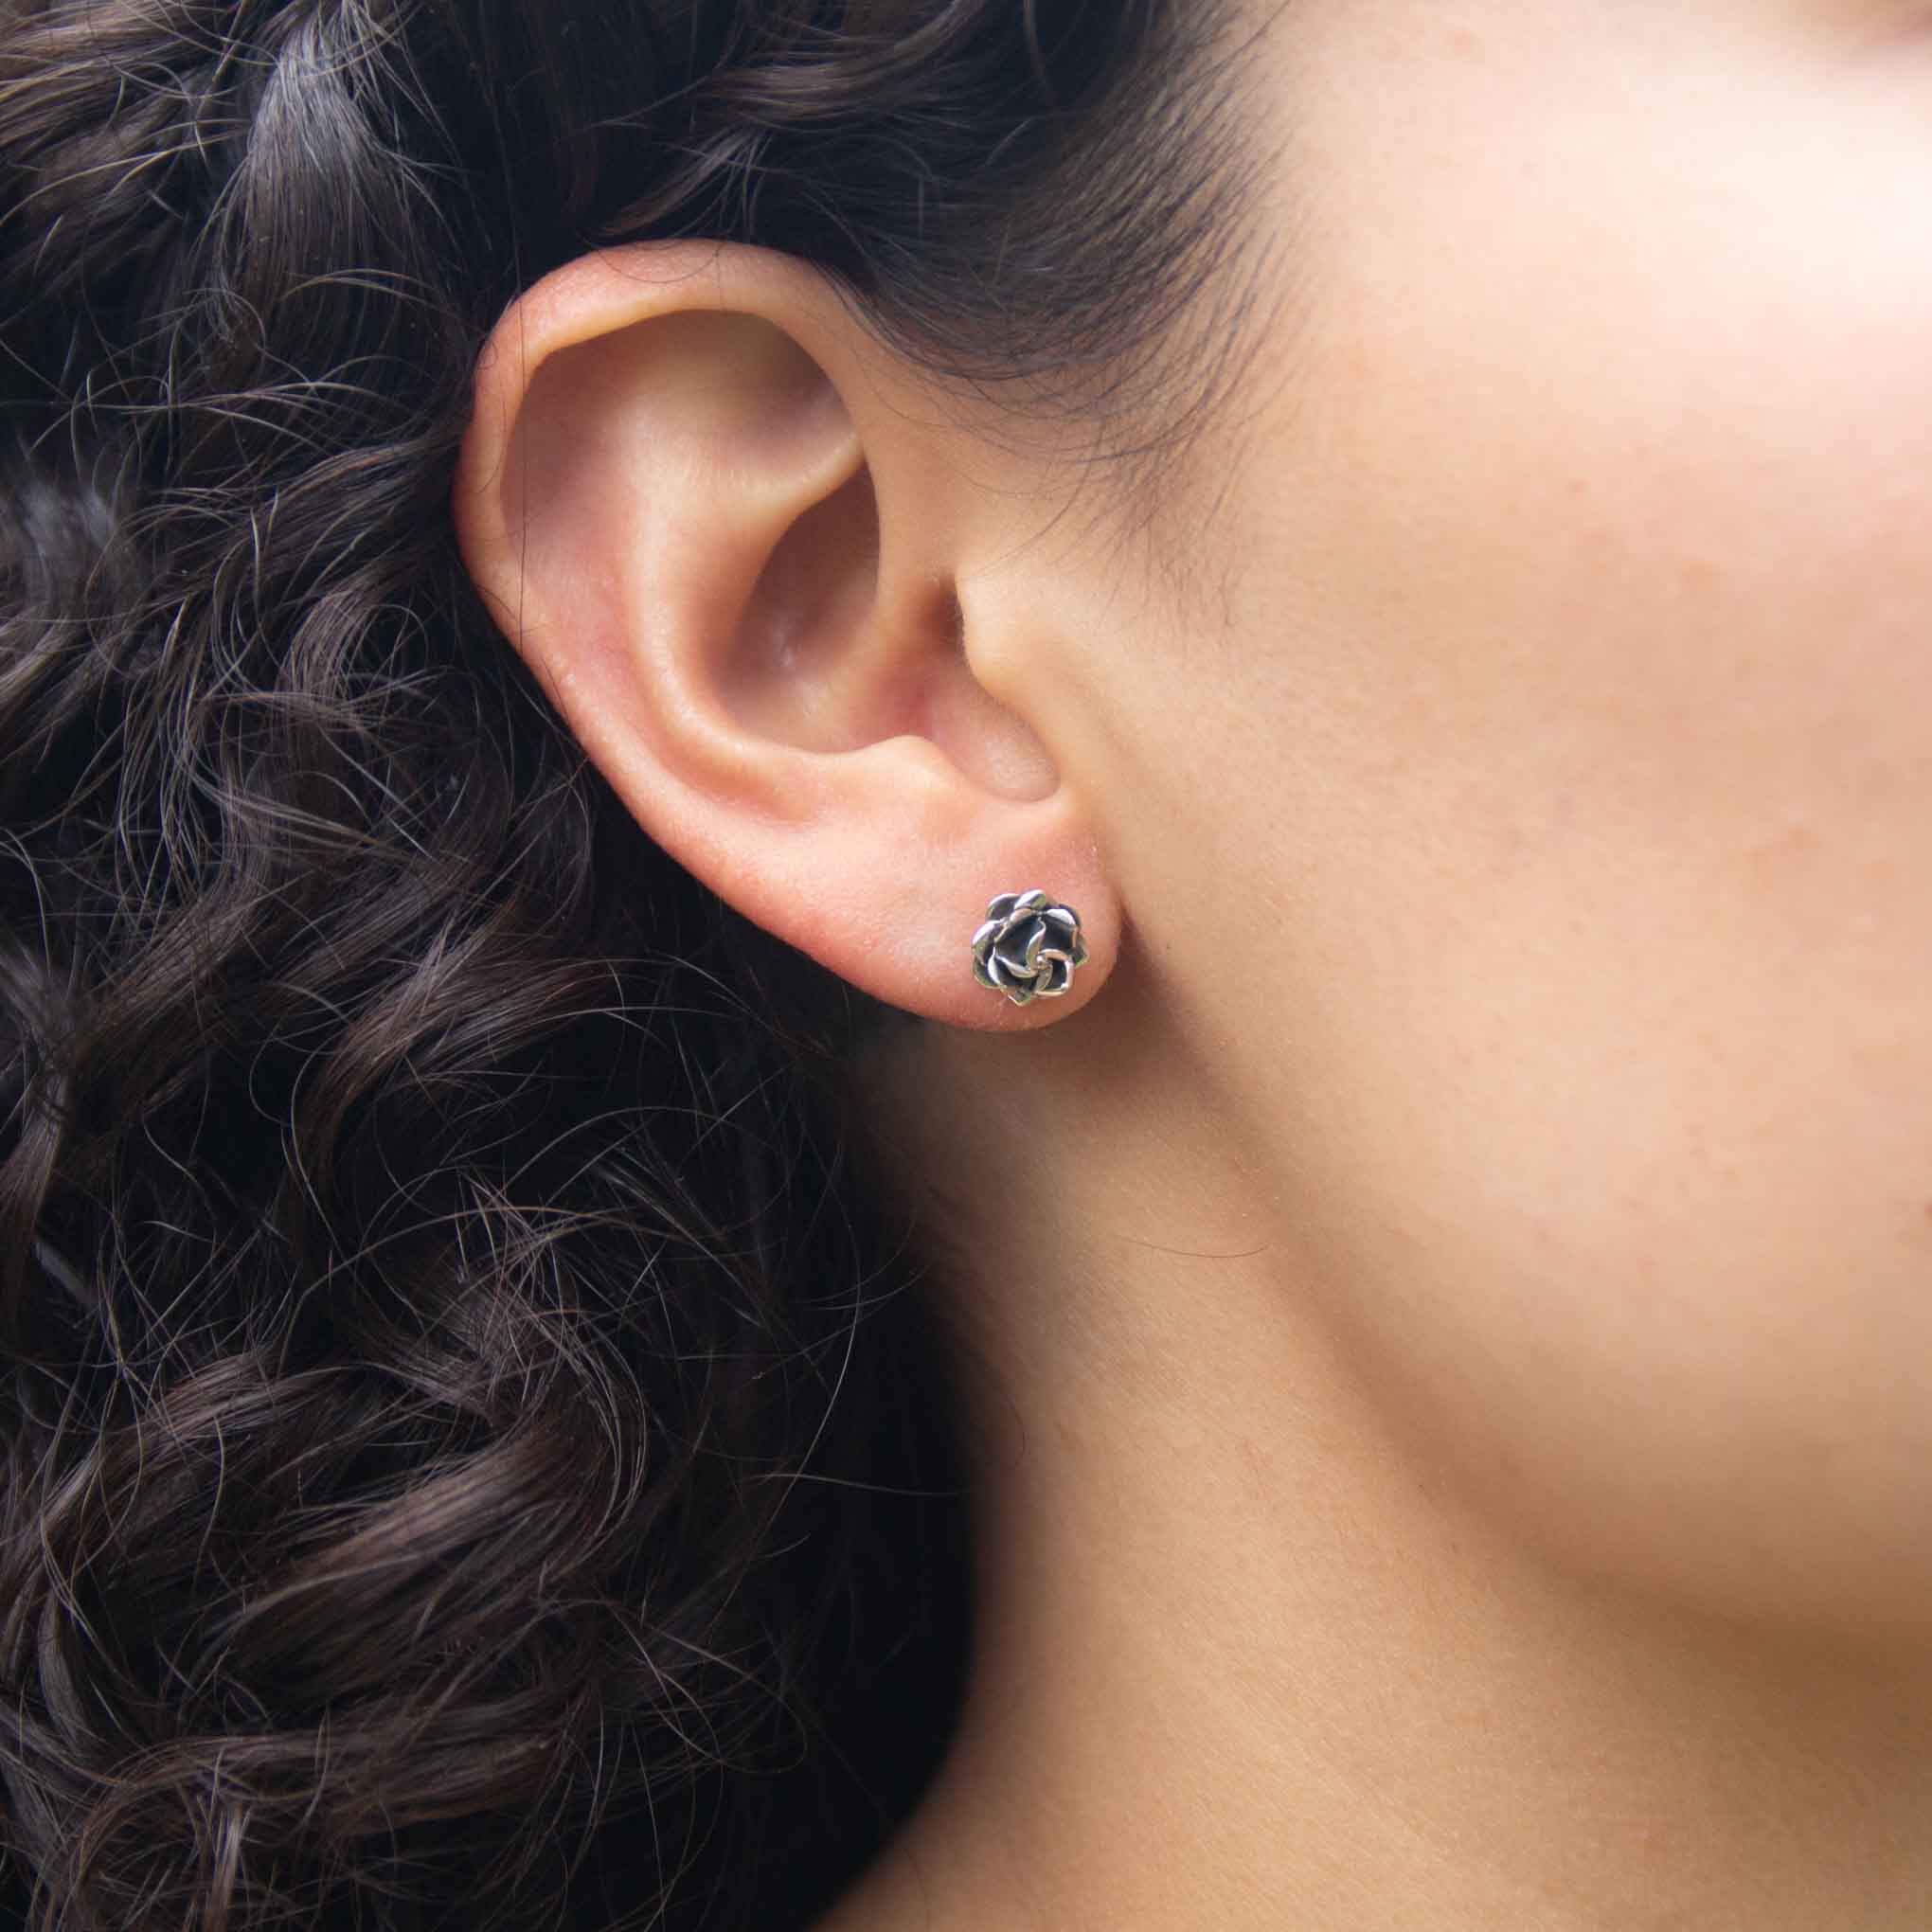 Silver earrings mini rose